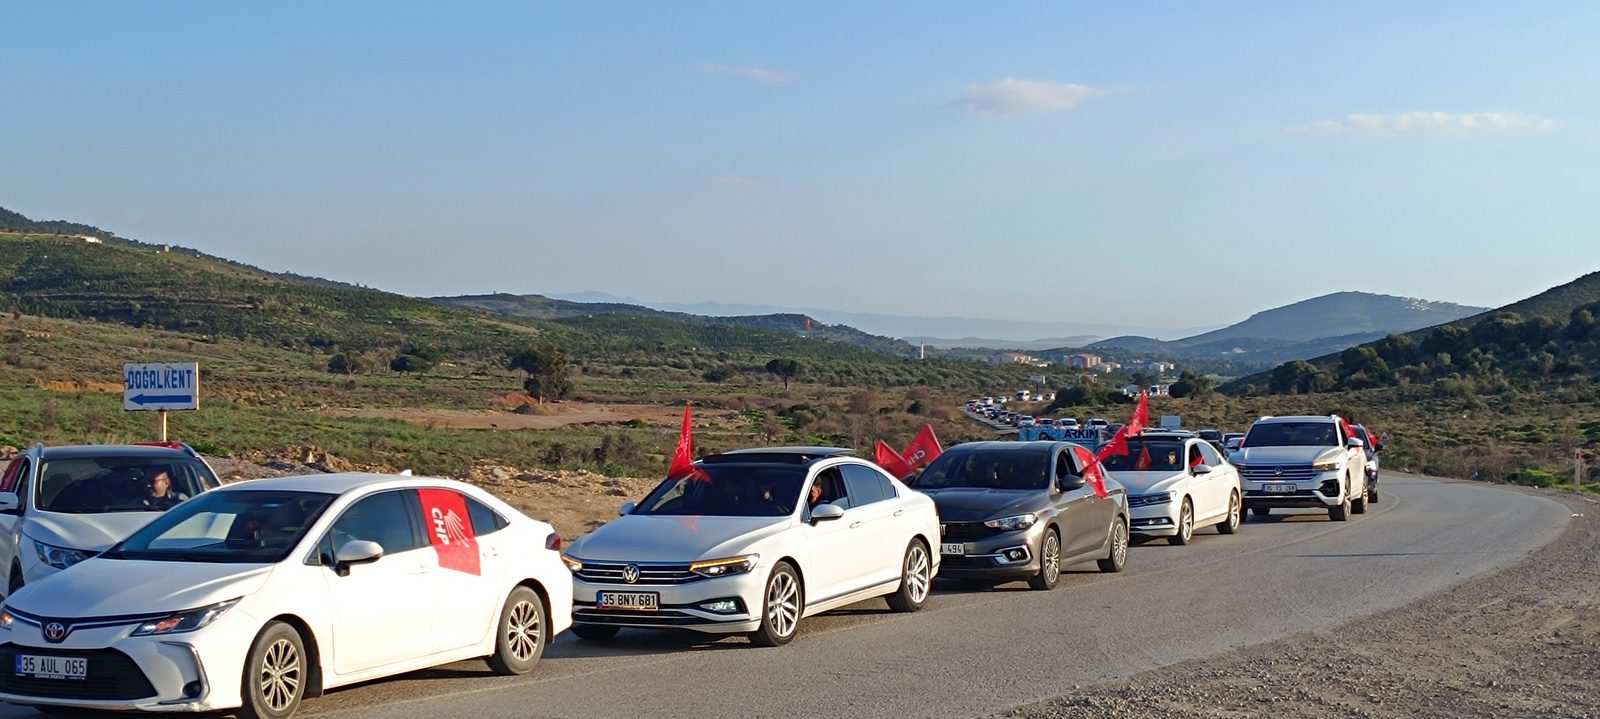 foça belediyesi Foça İlçe Merkezi’nde başlatılan araç konvoyu Kozbeyli, Ilıpınar, Gerenköy, Bağarası ve Yenibağarası’ndan gelenlerle Yenibağarası Mahallesinde birleşti. Parti bayraklarıyla süslenmiş araçlar şarkılar çalarak, kornalar basarak Yenifoça’ya geldi. CHP Yenifoça Seçim Bürosu’nun açılış törenine çok sayıda partiliyle birlikte bazı eski belediye ve ilçe başkanlarıyla, meclis üyeleri de katıldı.. 